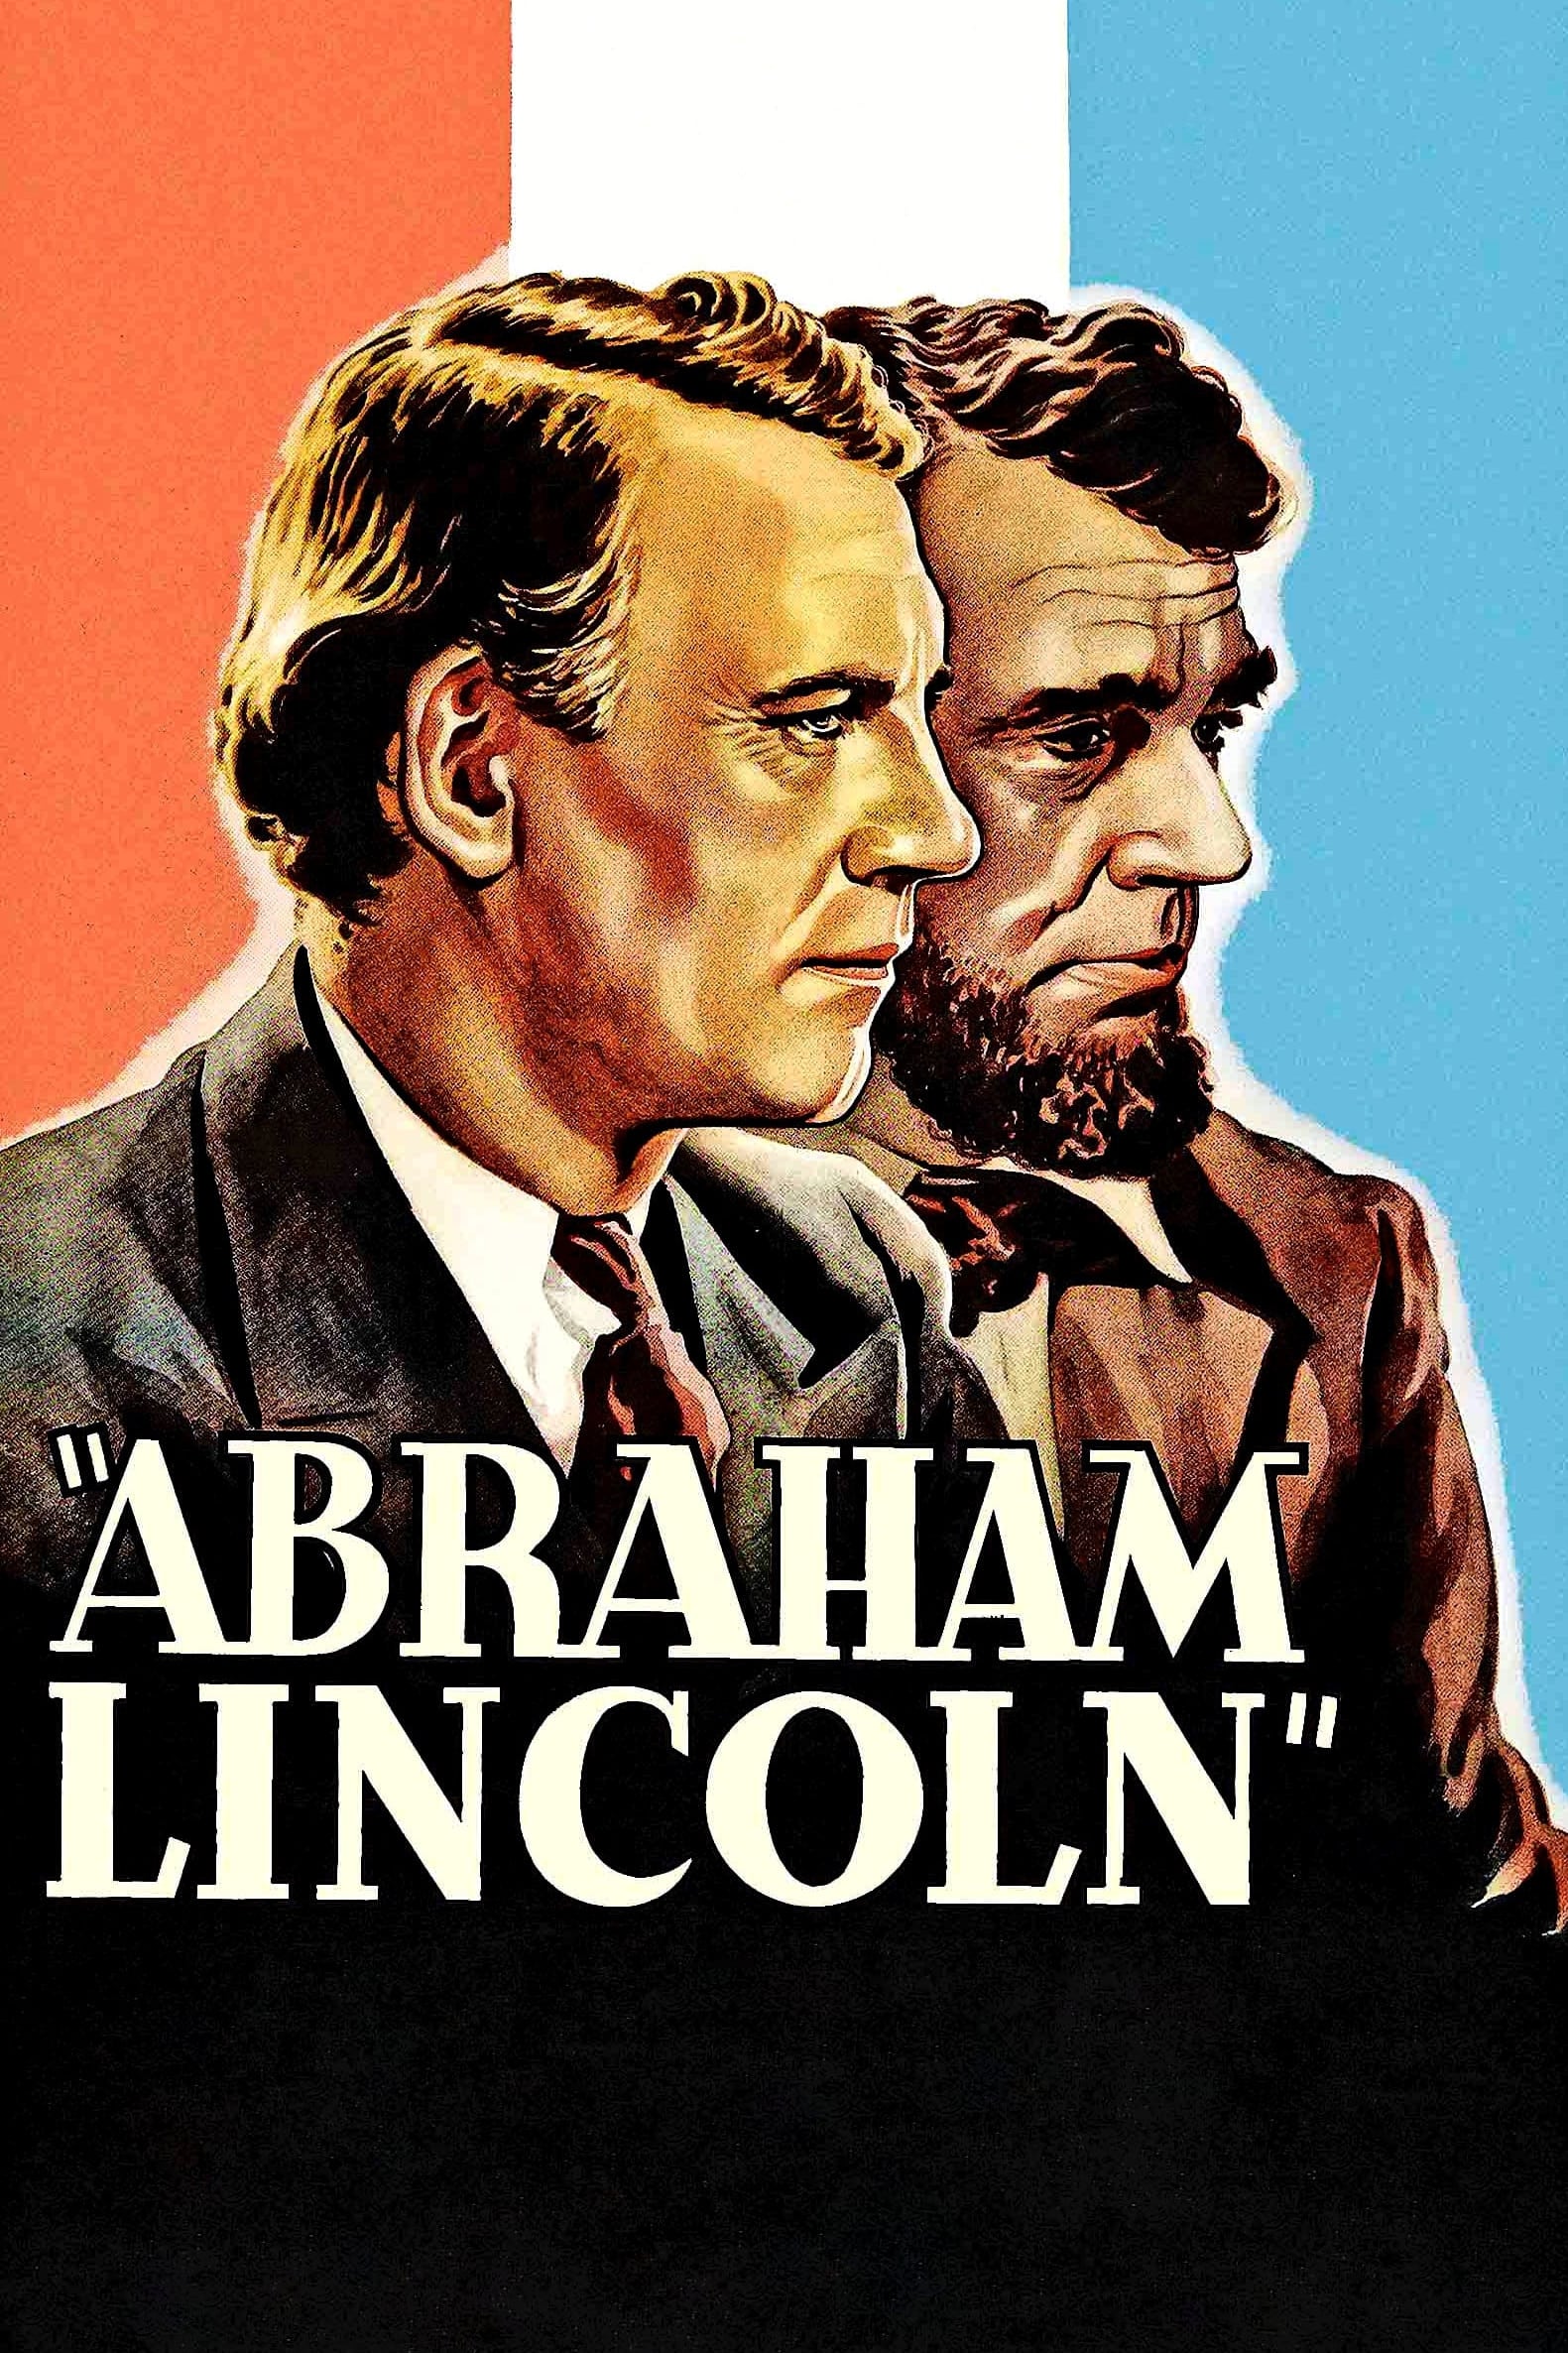 Abraham Lincoln / La Révolte des esclaves